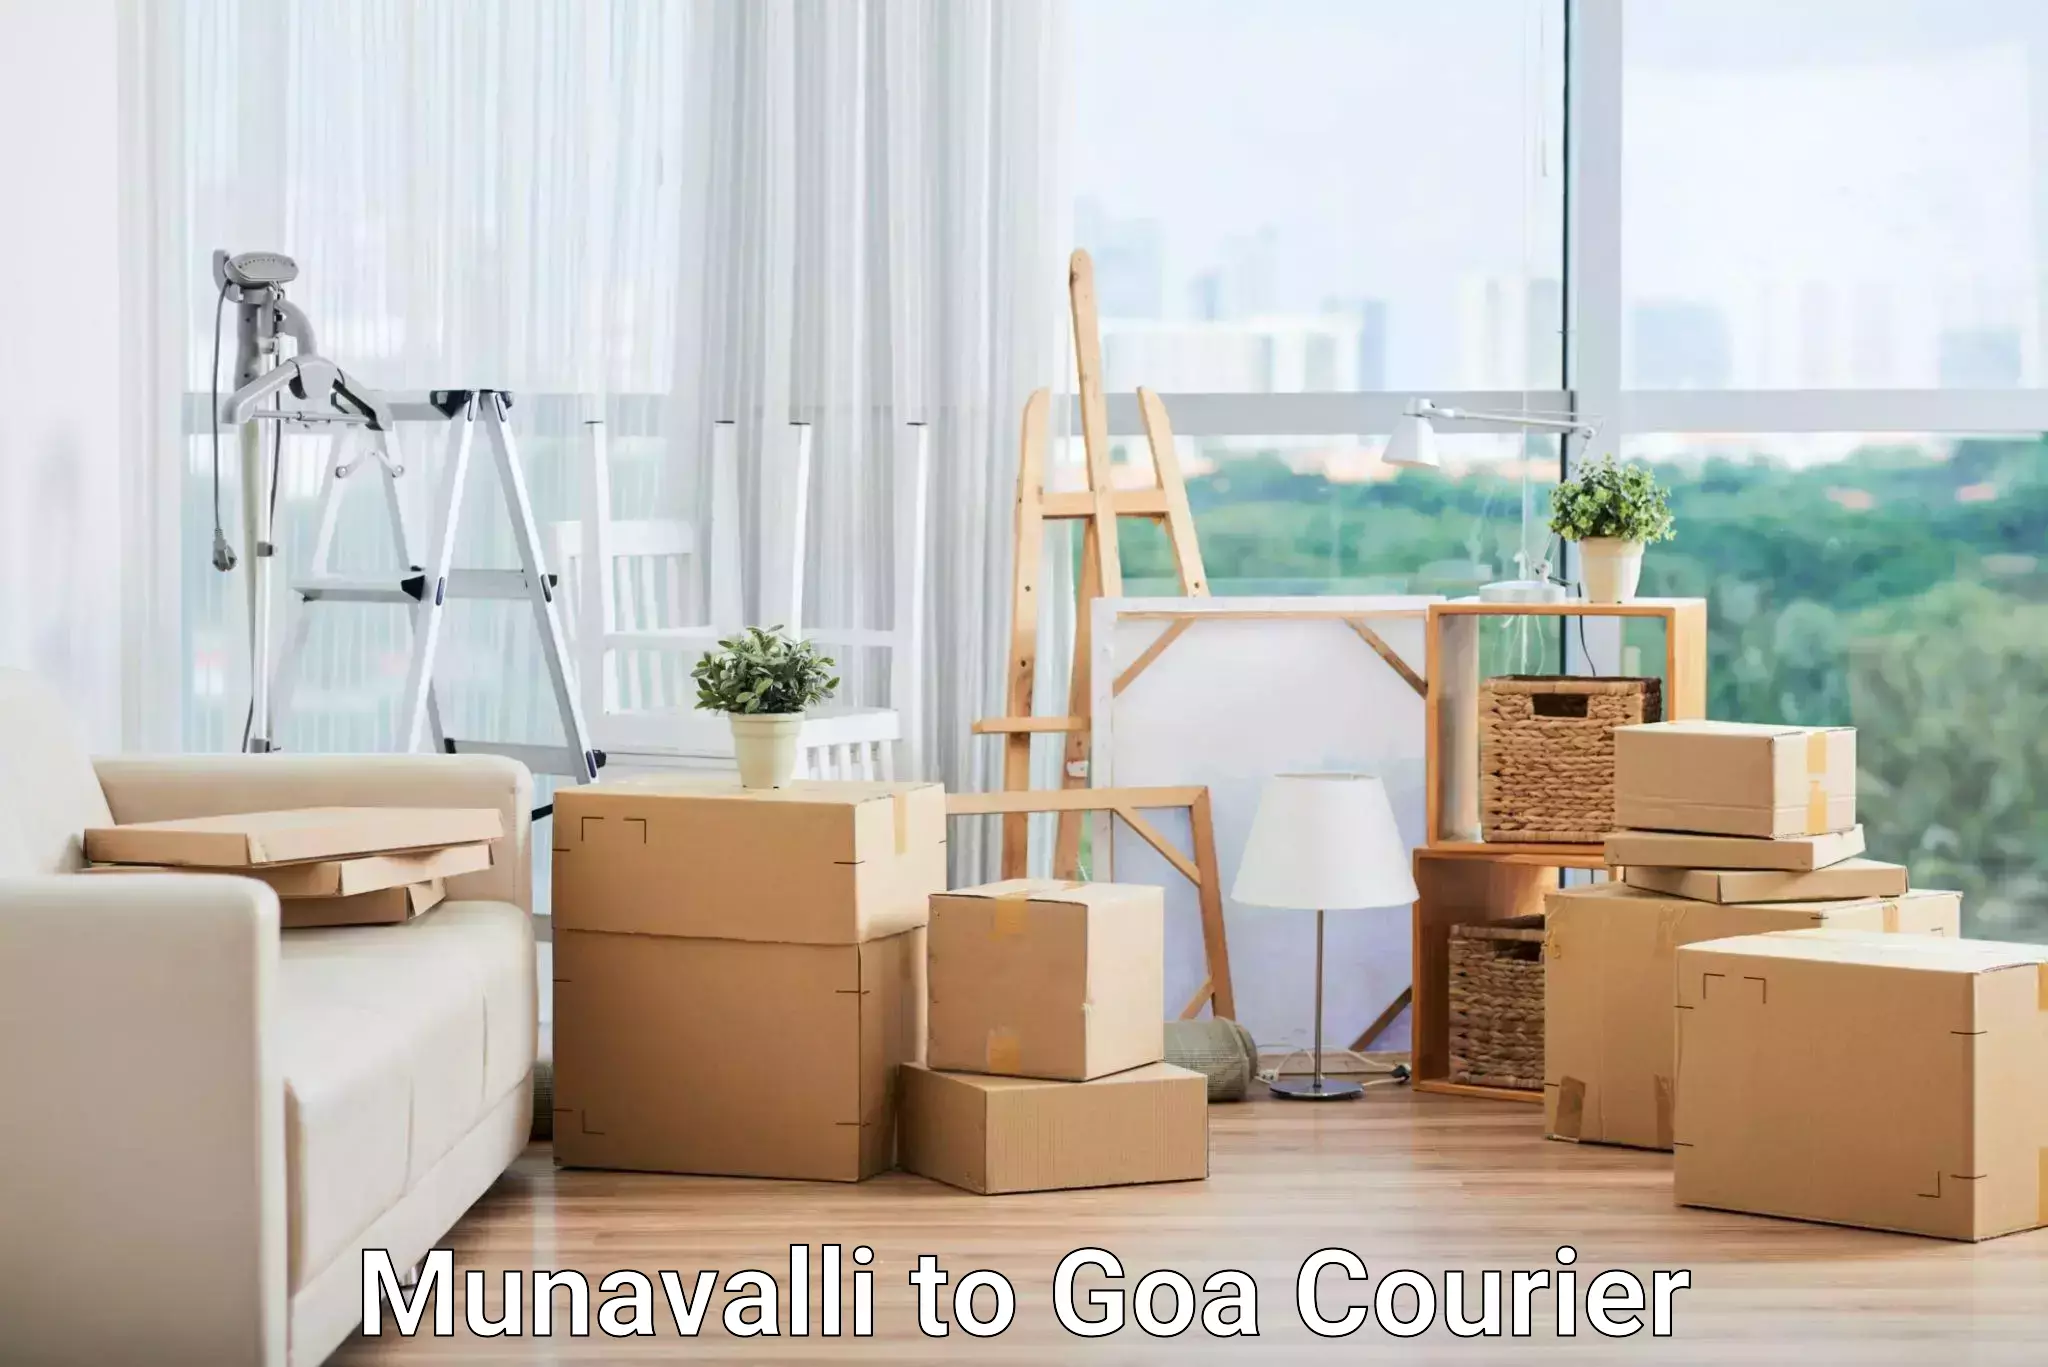 State-of-the-art courier technology Munavalli to Vasco da Gama